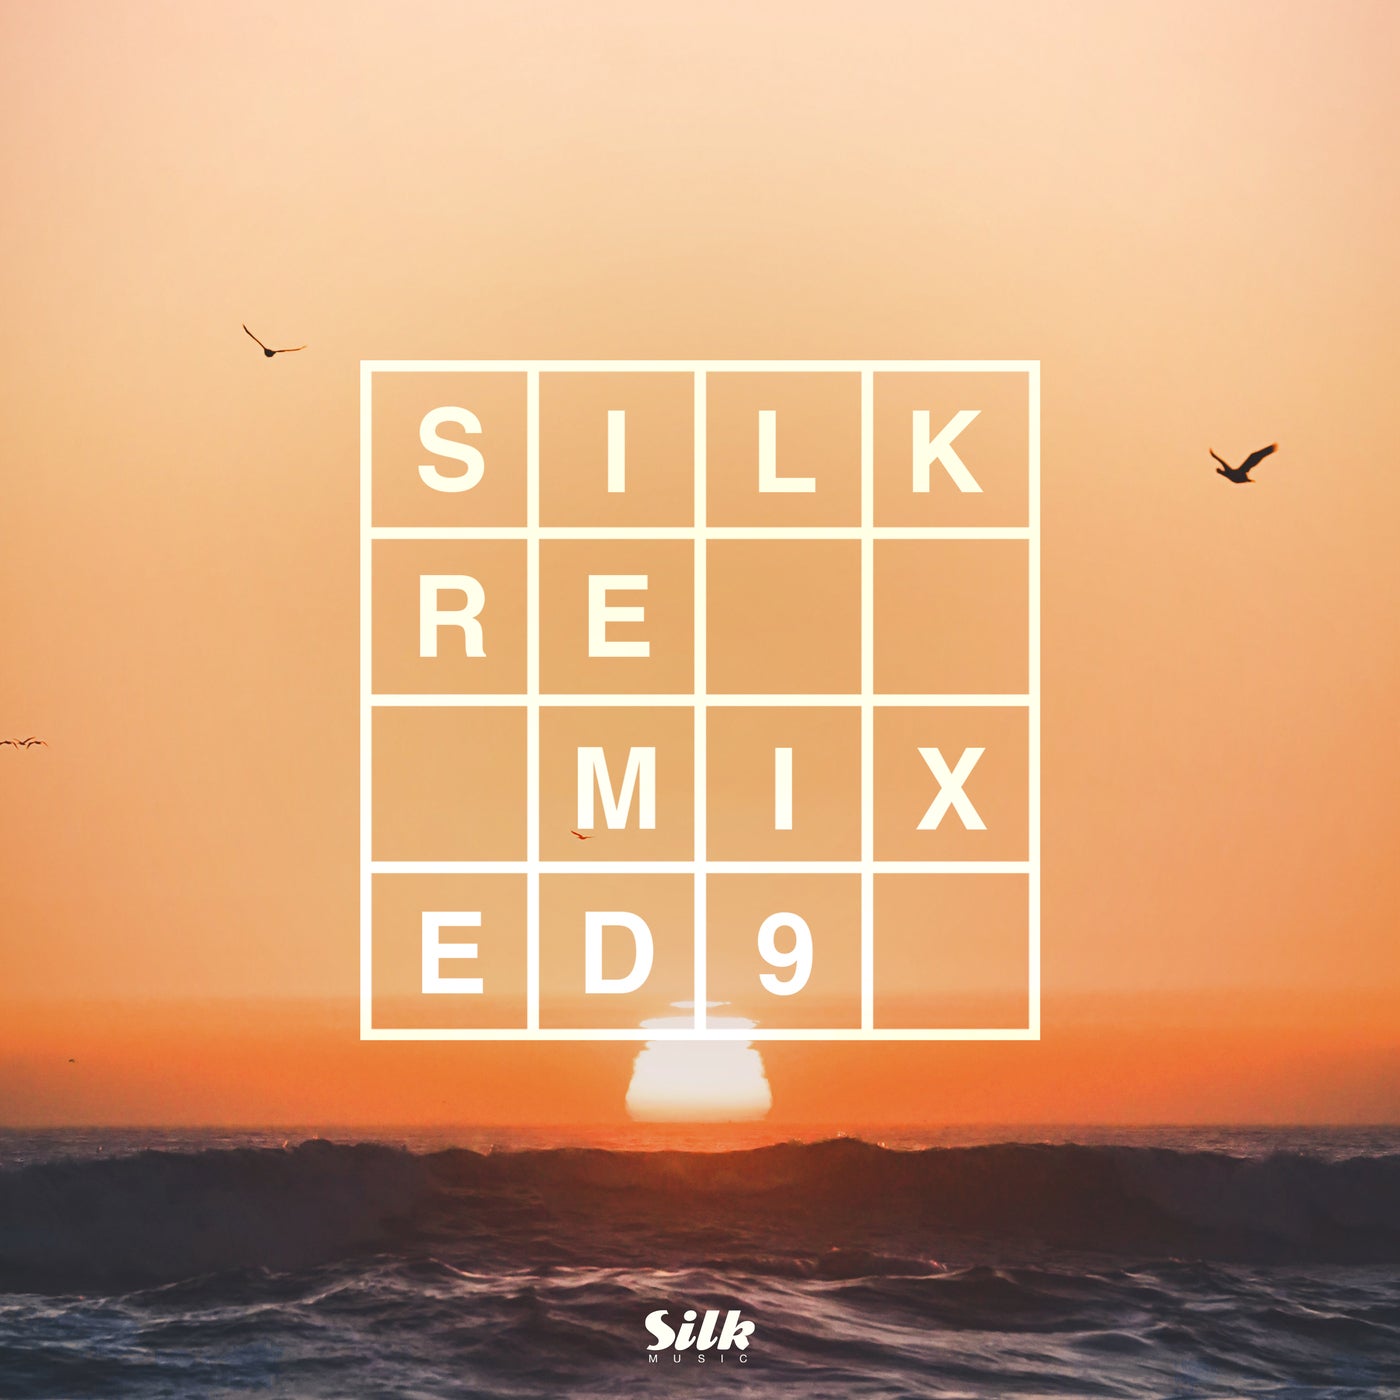 Silk Remixed 09